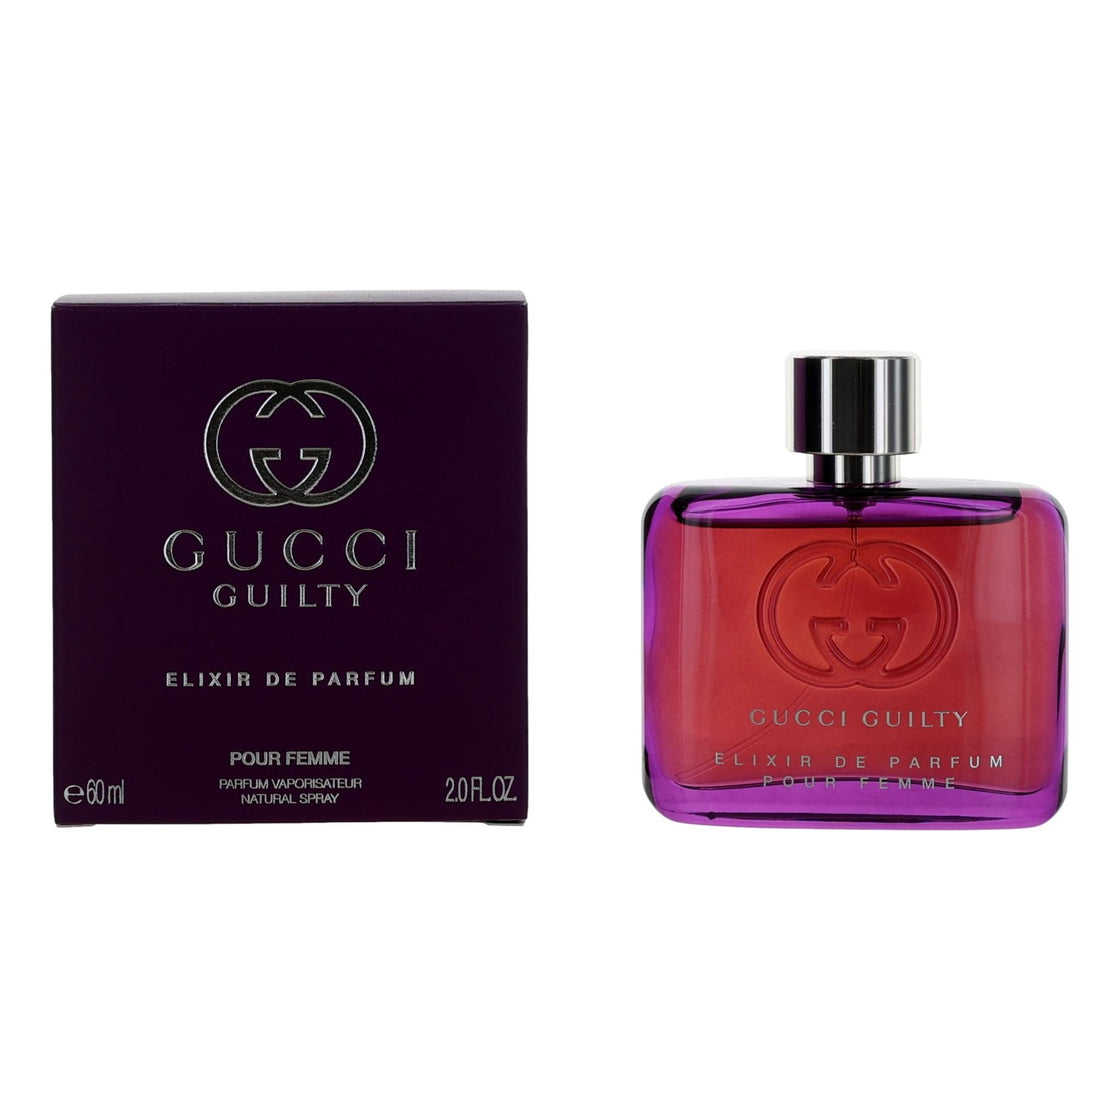 Gucci Guilty Elixir De Parfum Pour Femme By Gucci, 2 Oz Parfum Spray For Women